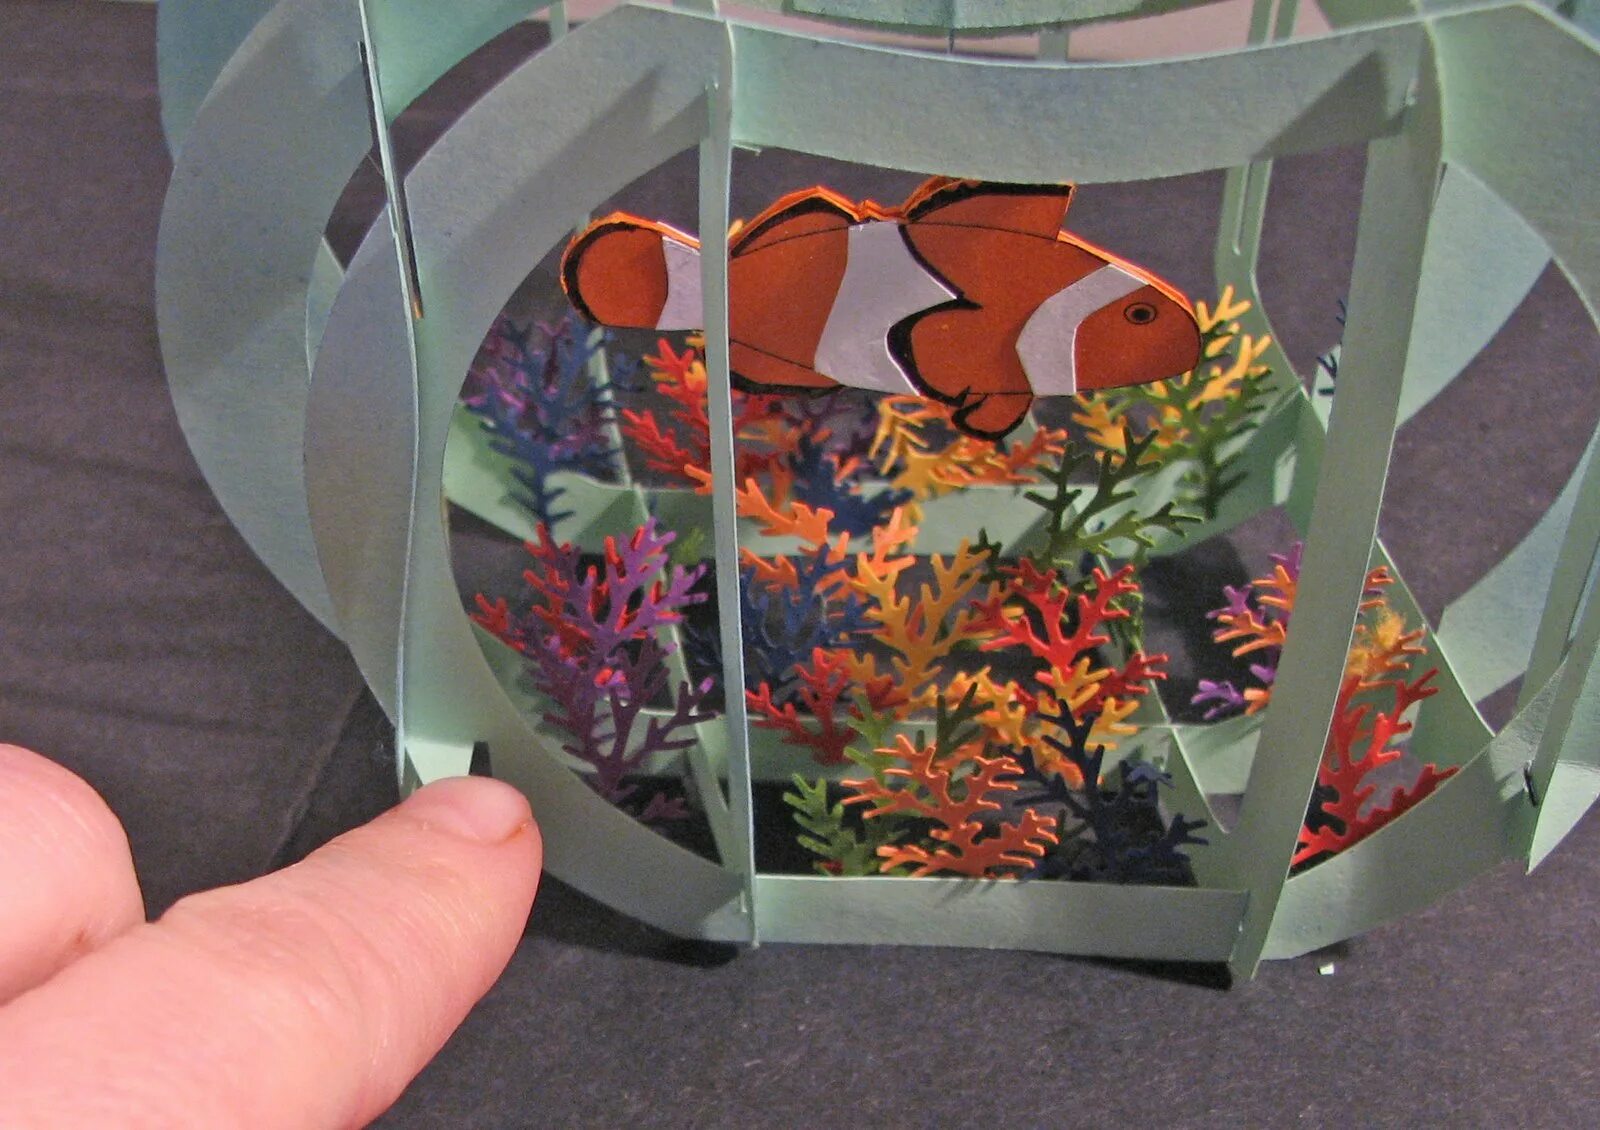 Рыбка из бумаги аквариум. Поделка аквариум. Поделка объемный аквариум. Поделка аквариум с рыбками. Поделка аквариум из бумаги.